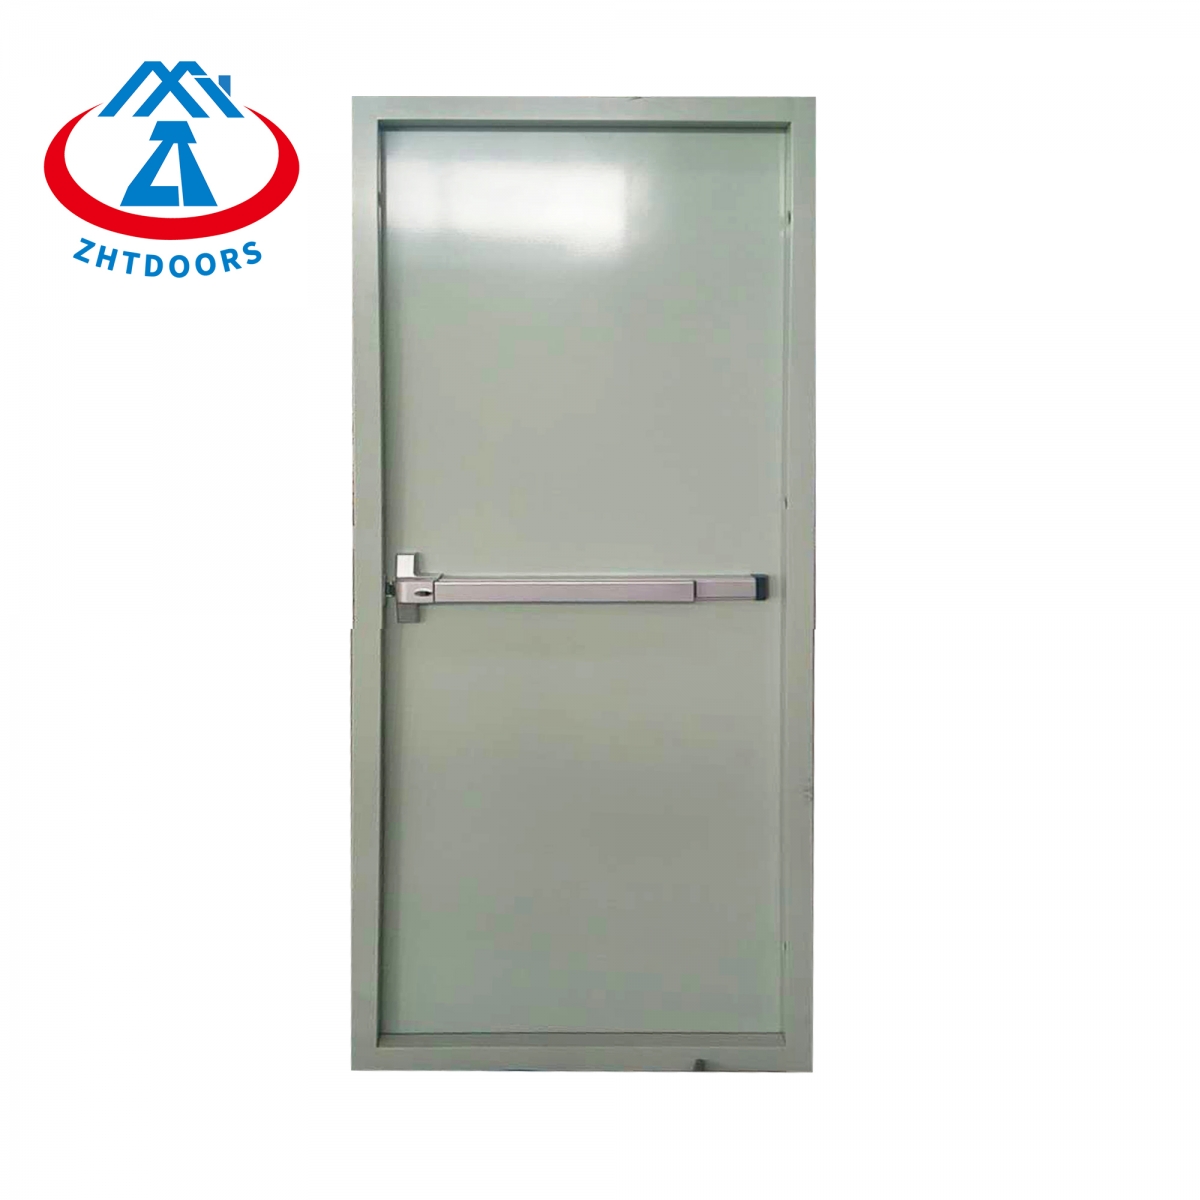 Asico Fire Rated Door-ZTFIRE Door- Fire Door,Fireproof Door,Fire rated Door,Fire Resistant Door,Steel Door,Metal Door,Exit Door